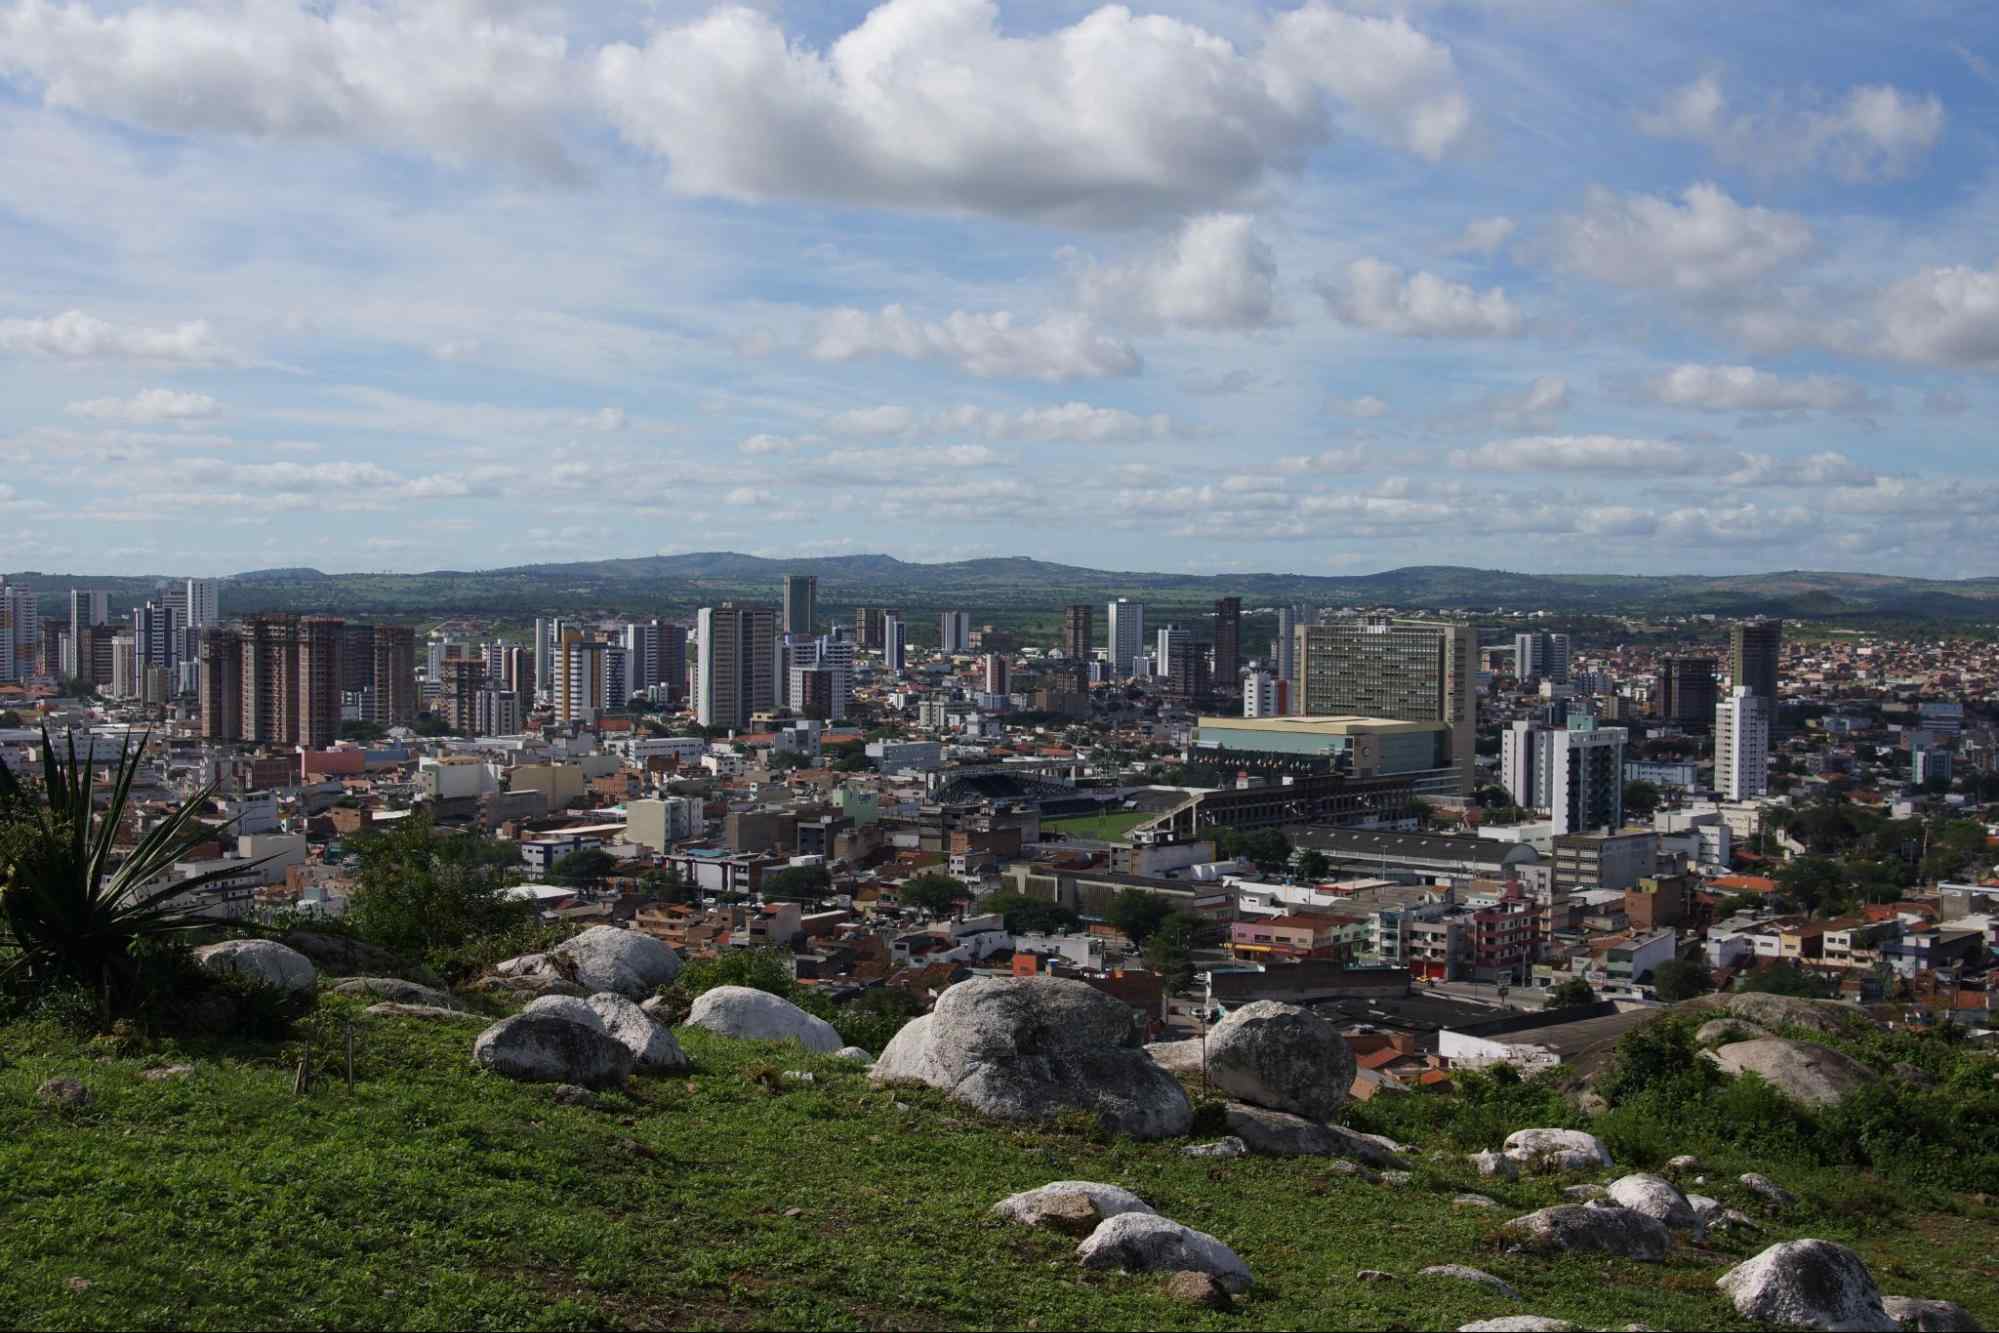 Vista aérea de Caruru, PE. A paisagem urbana é formada majoritariamente por construções baixas, com alguns prédios maiores, e rodeada por serras verdes.